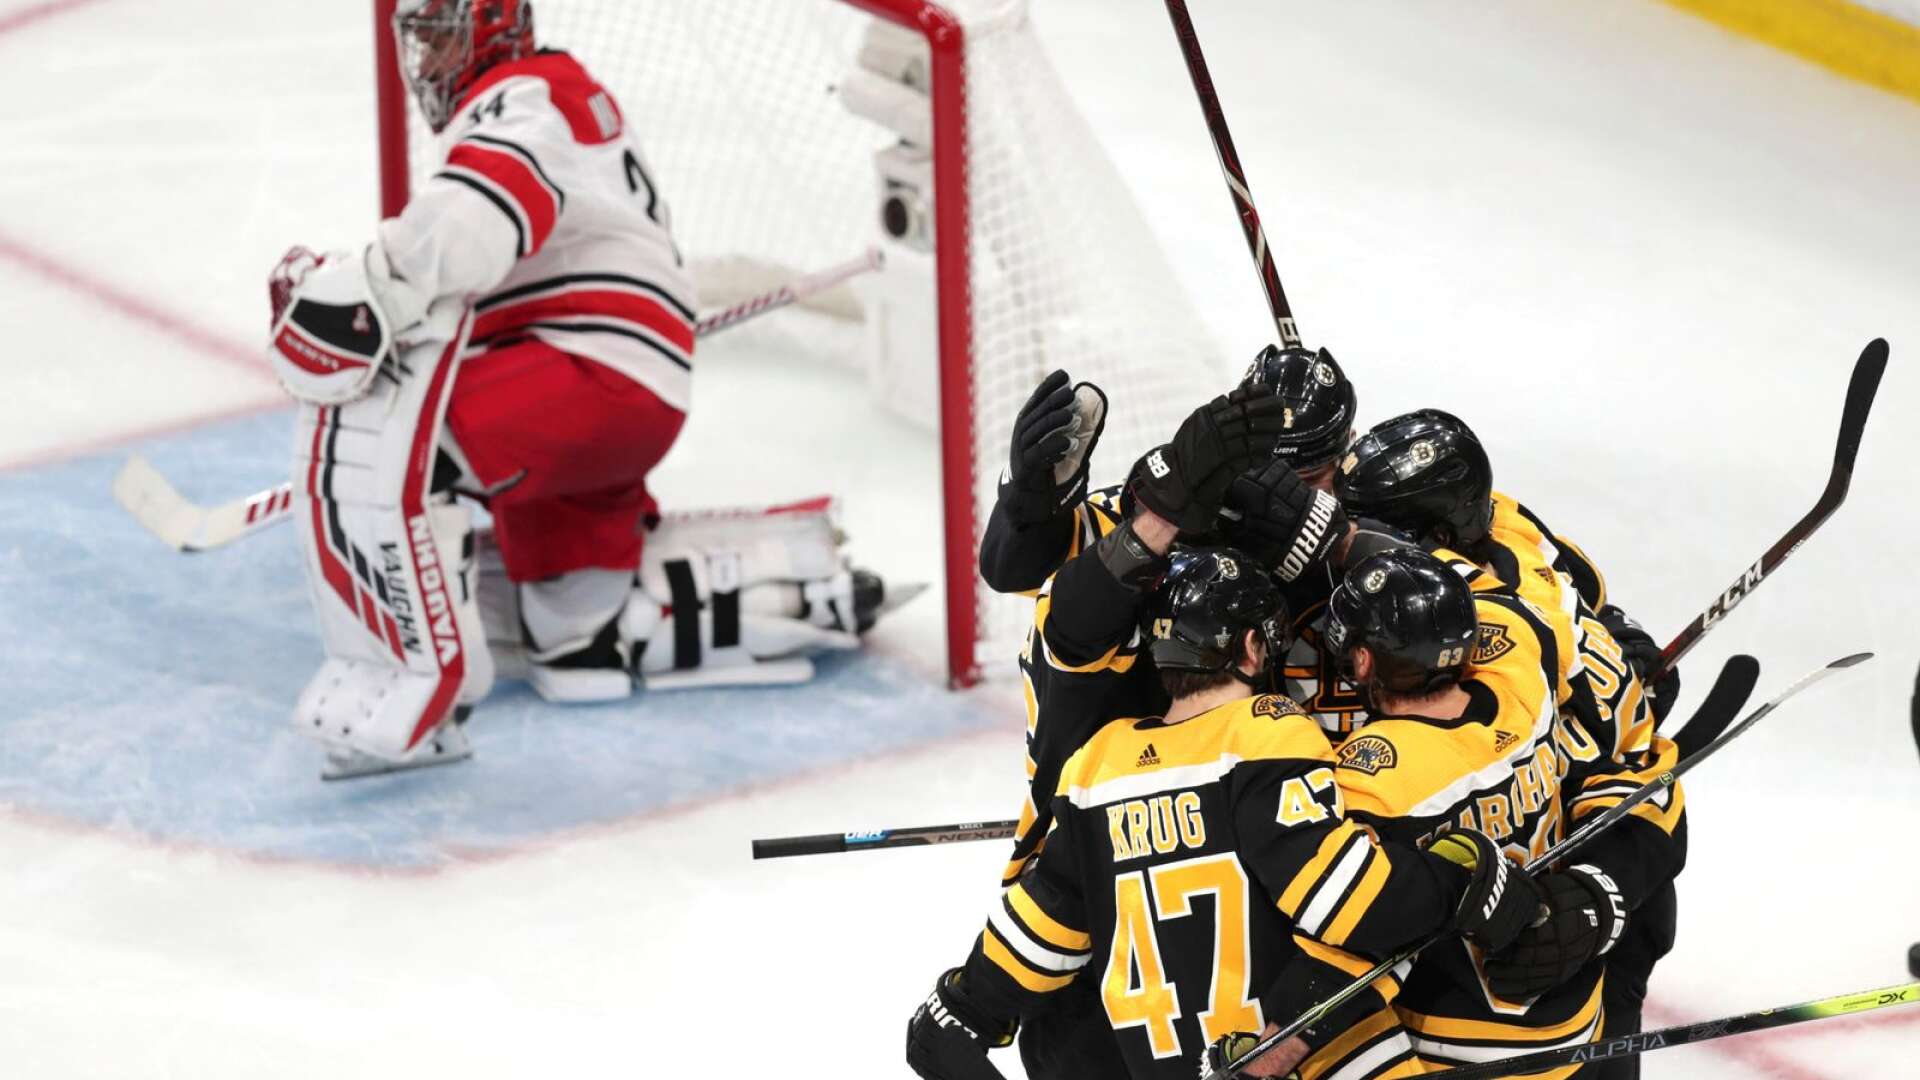 Boston Bruins är klart för Stanley Cup-final. Här en bild från den första matchen i semifinalserien mellan Boston och Carolina, när Marcus Johansson gjorde mål.